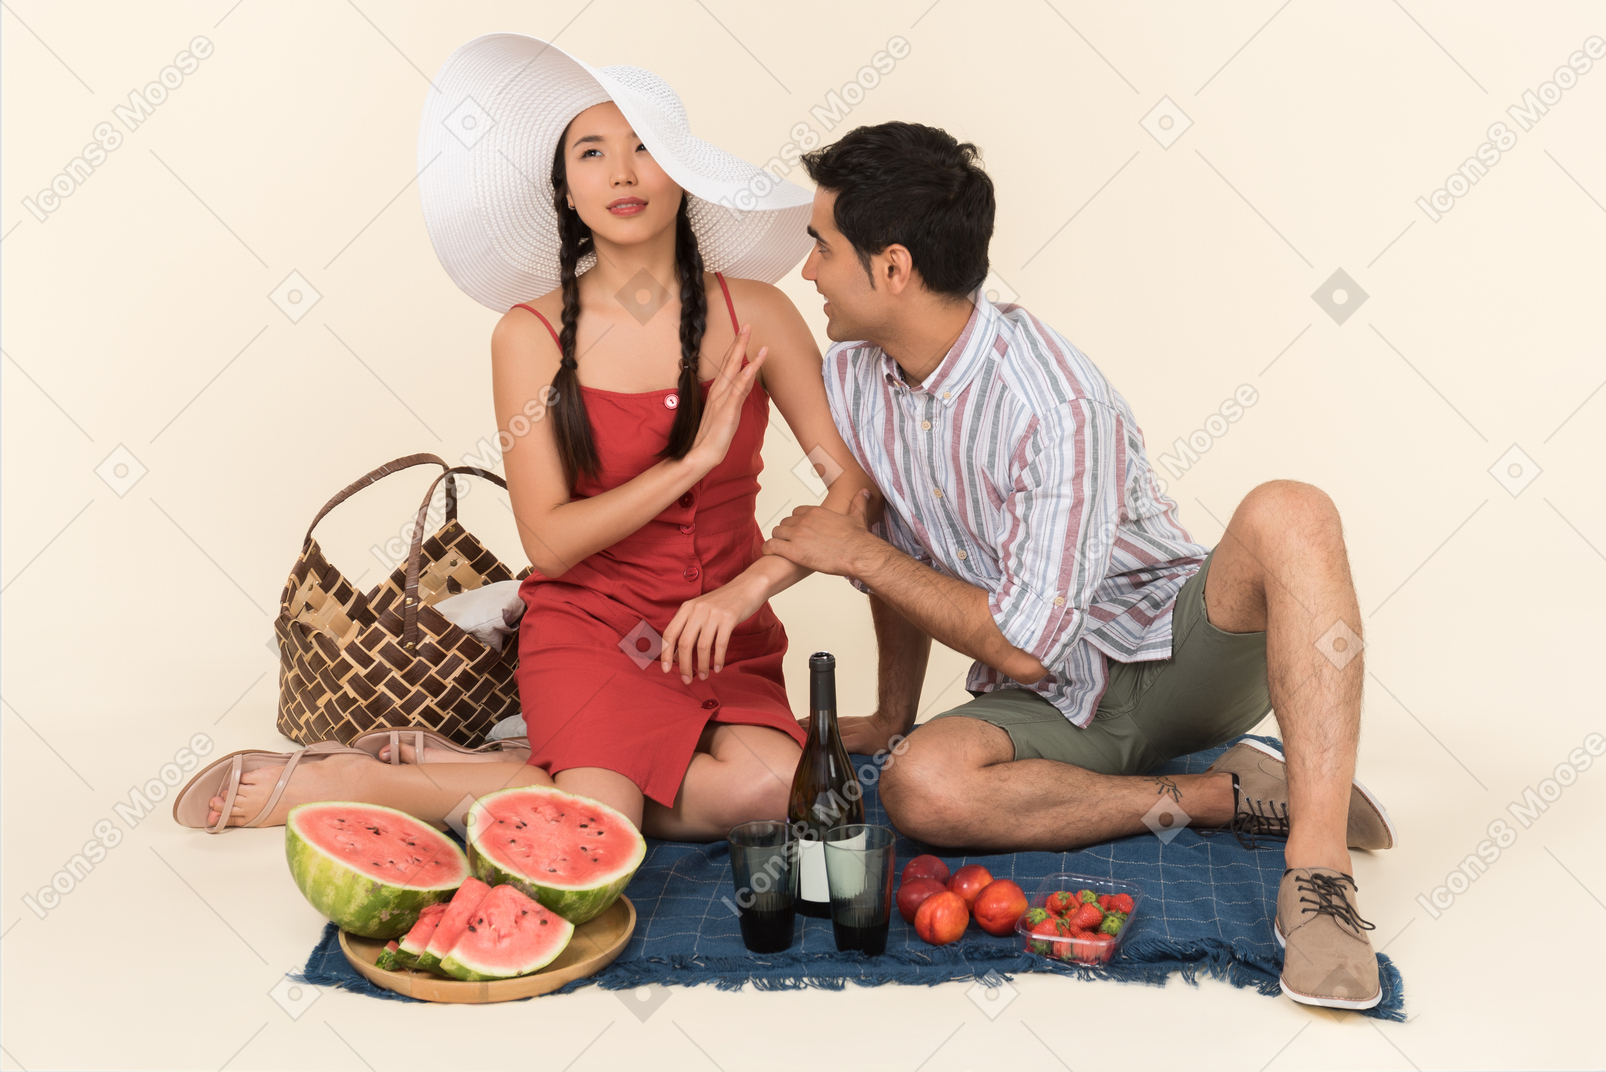 Молодая межрасовая пара устраивает пикник, а молодой женщине не нравится что-то